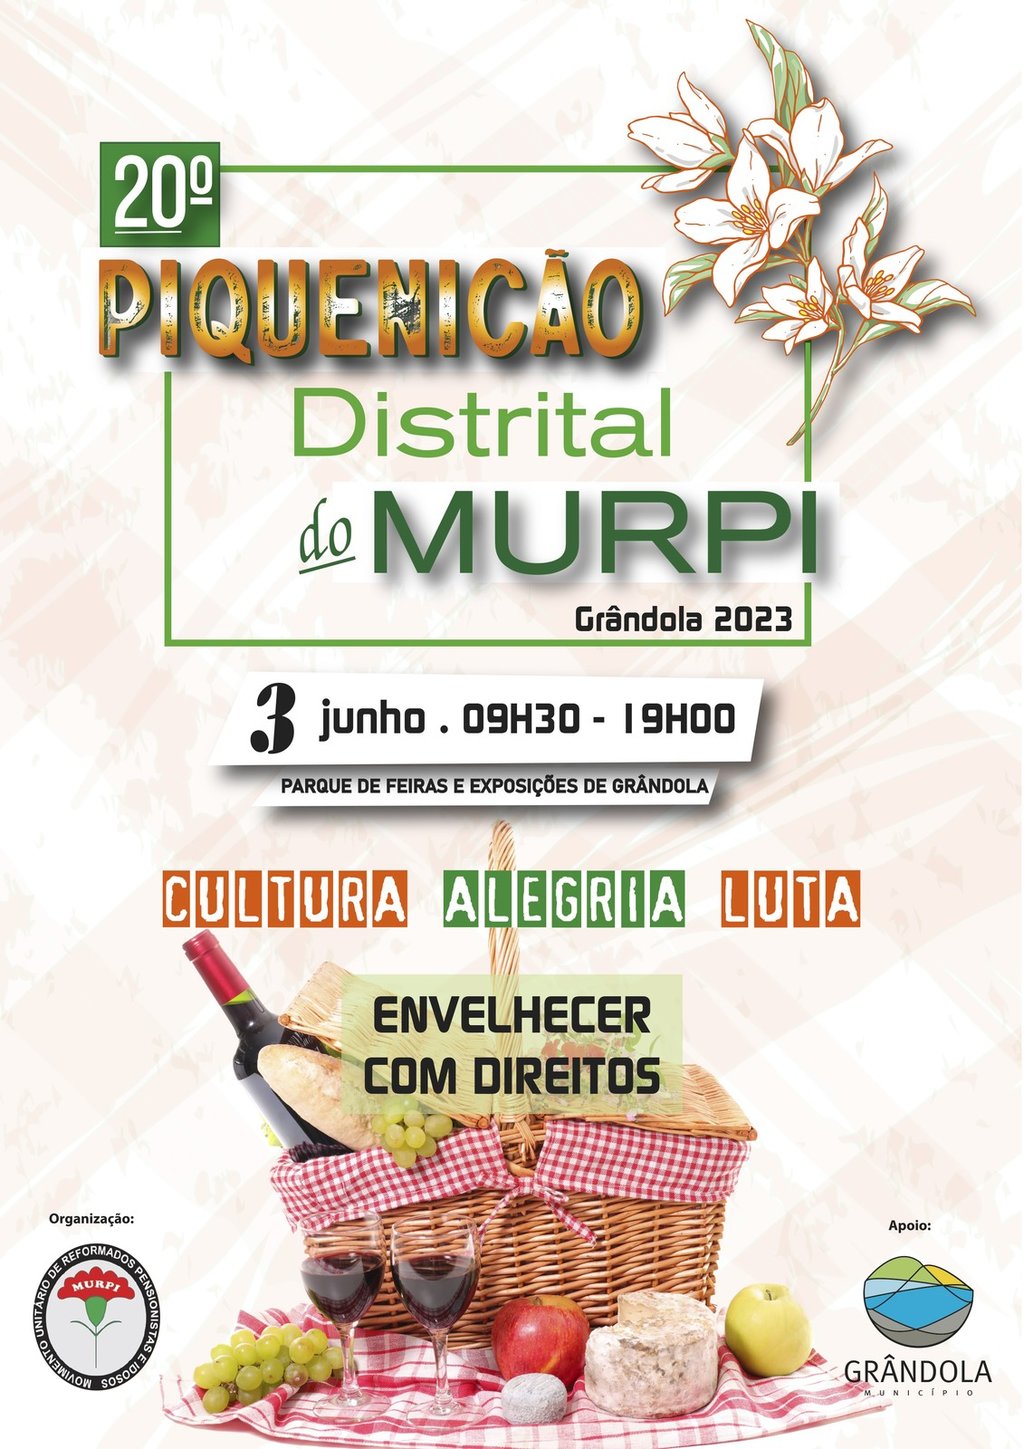 Piquenicão Distrital do MURPI junta mais de 600 pessoas em Grândola